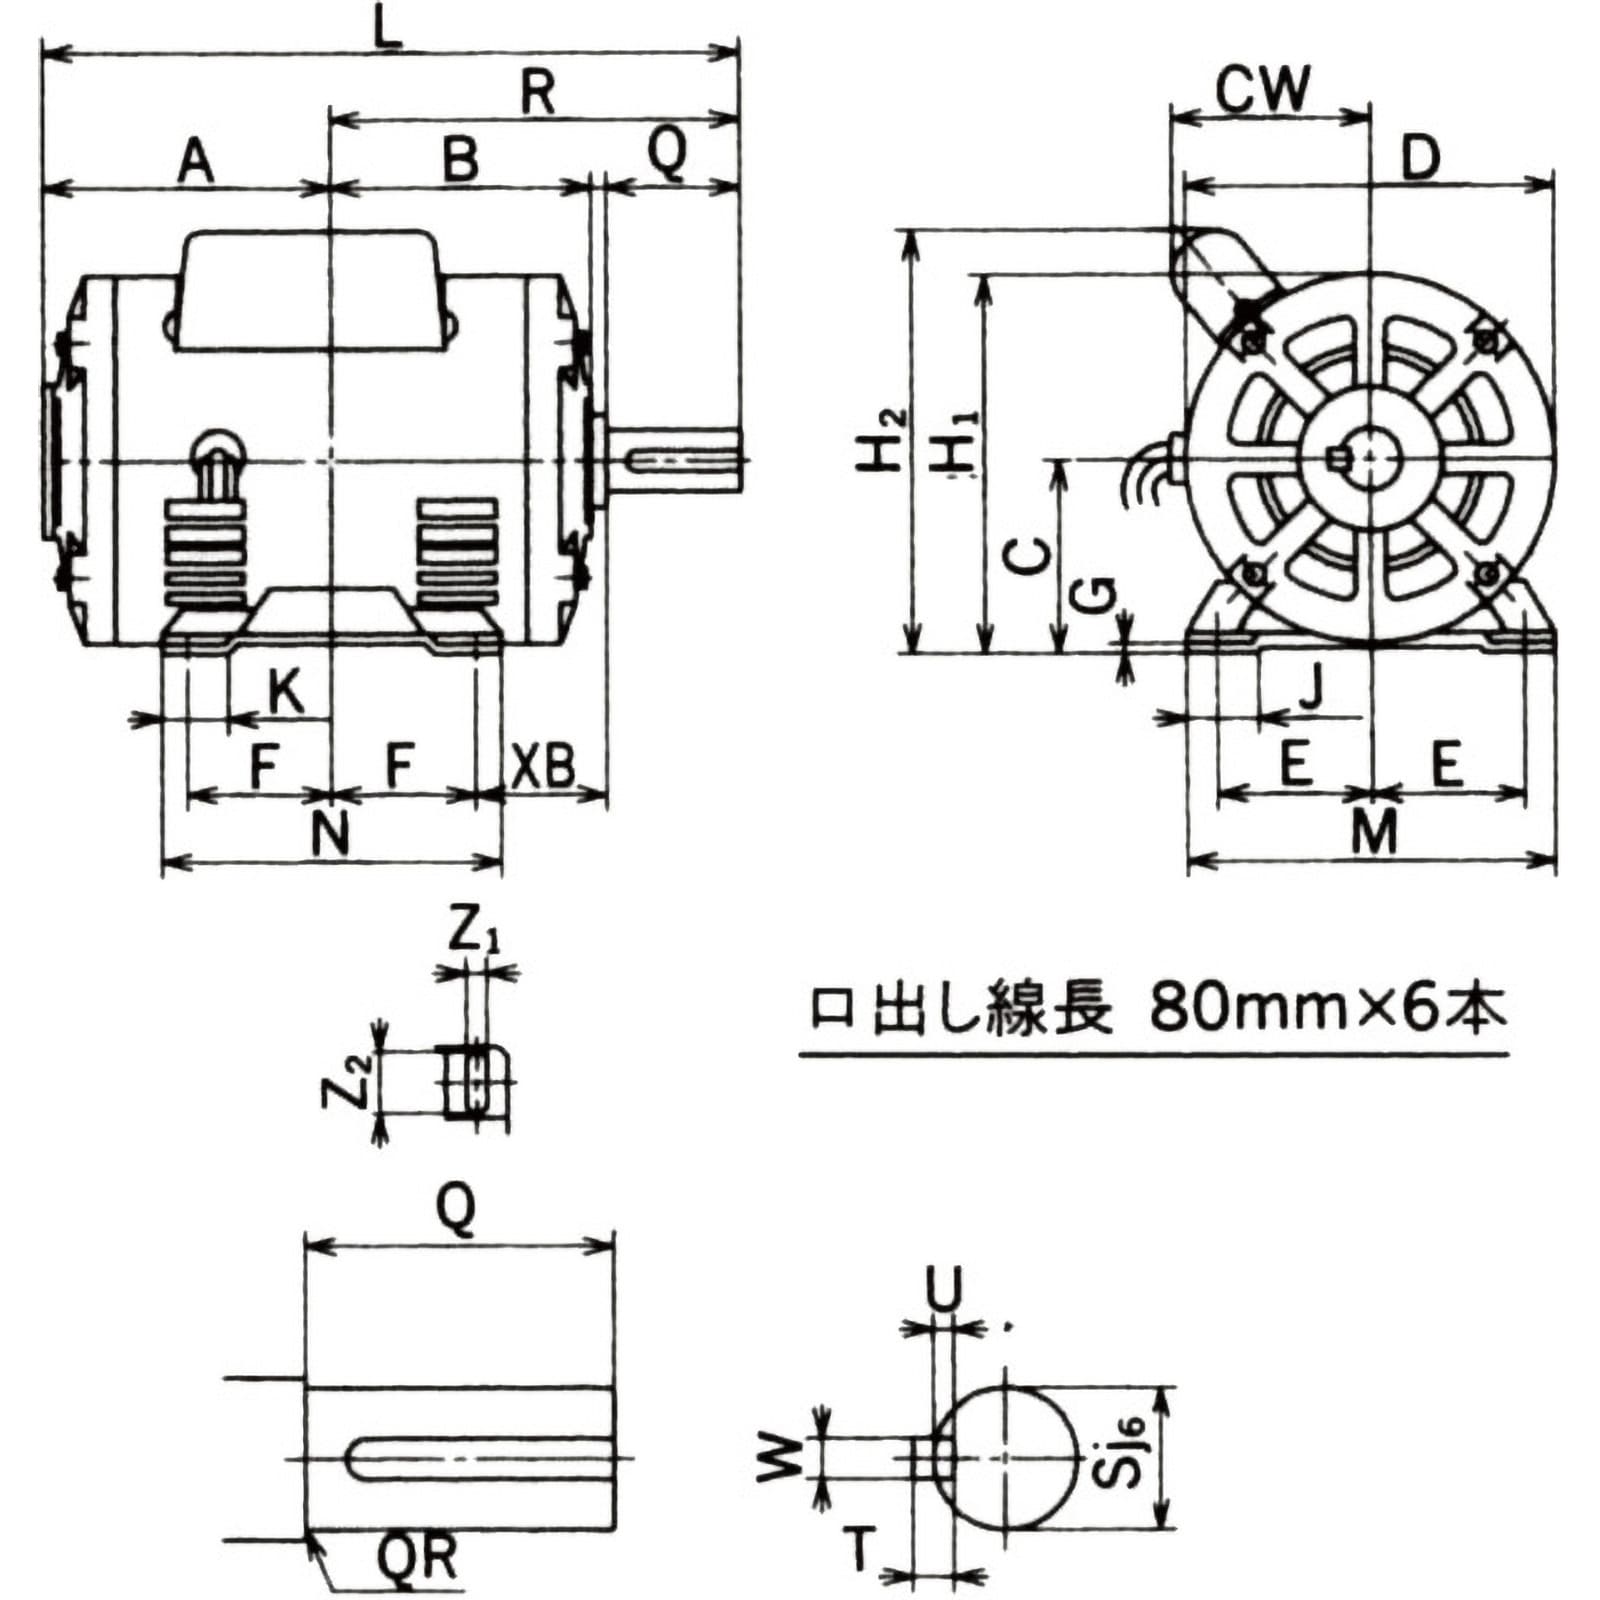 日立産機システム EFOUP-KQ 0.4KW 4P 100V コンデンサモータ (単相・コンデンサ始動式・防滴保護型) - 3